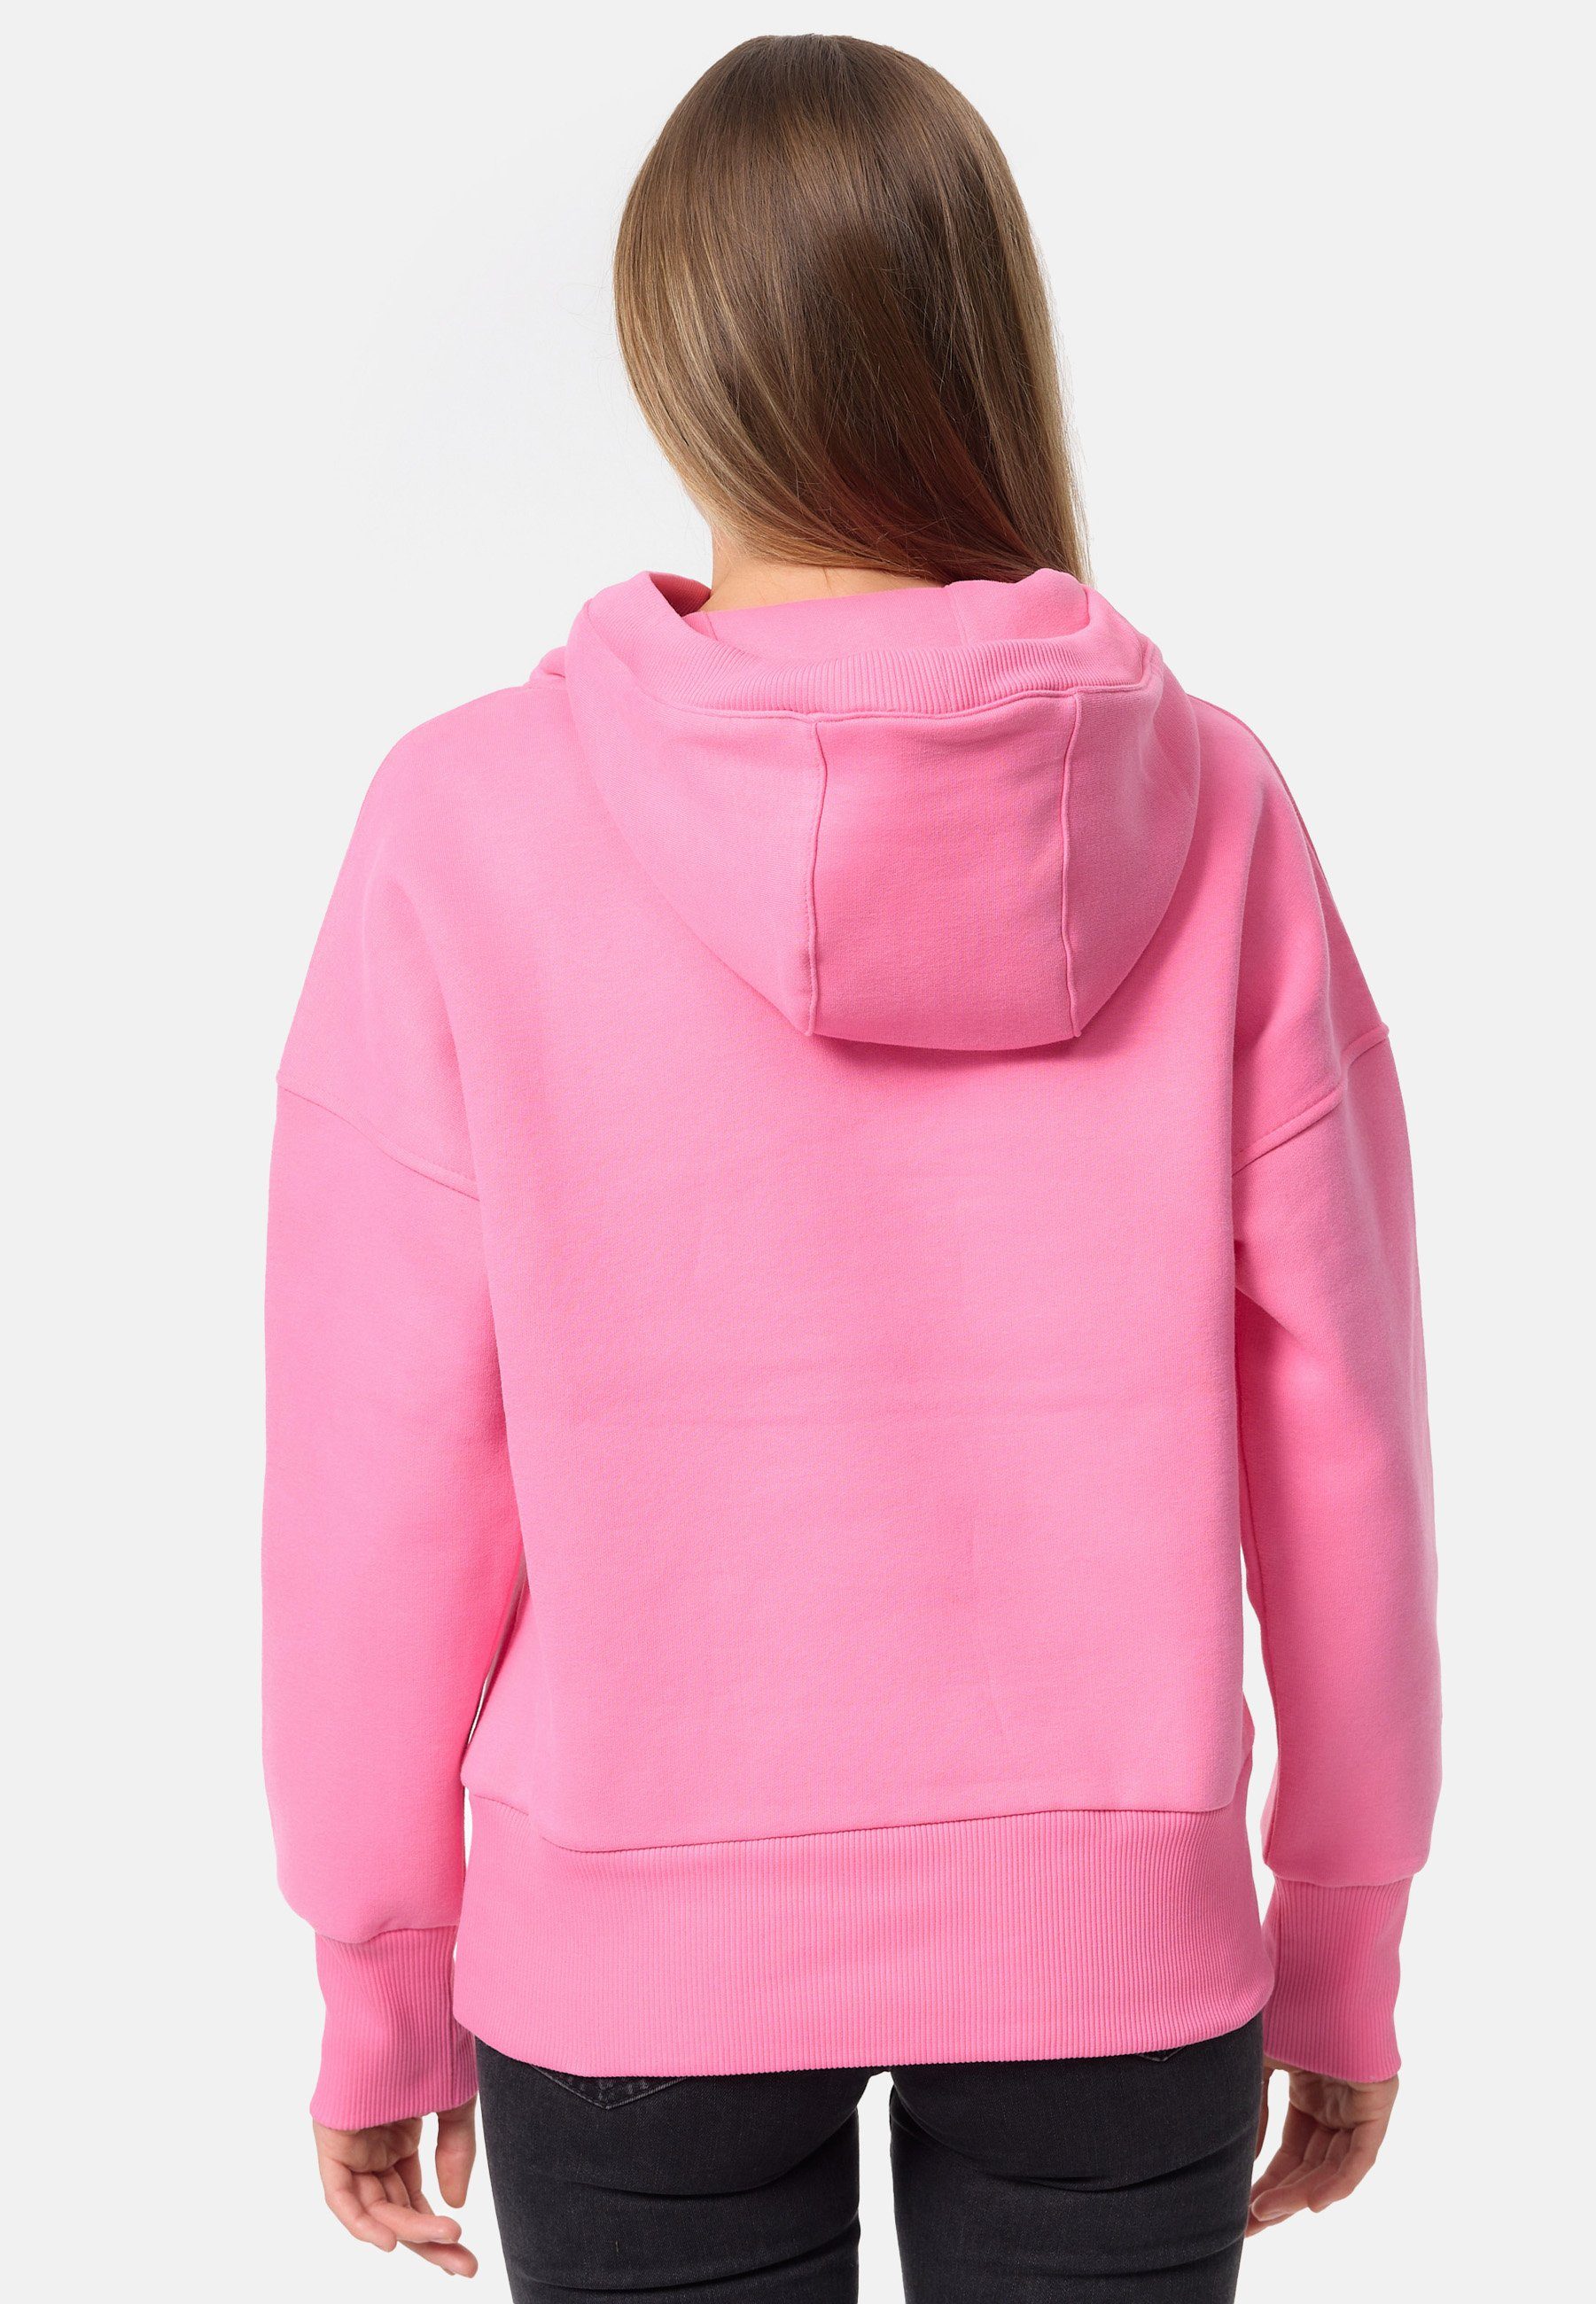 Decay Kapuzensweatshirt Design klassischen im rosa